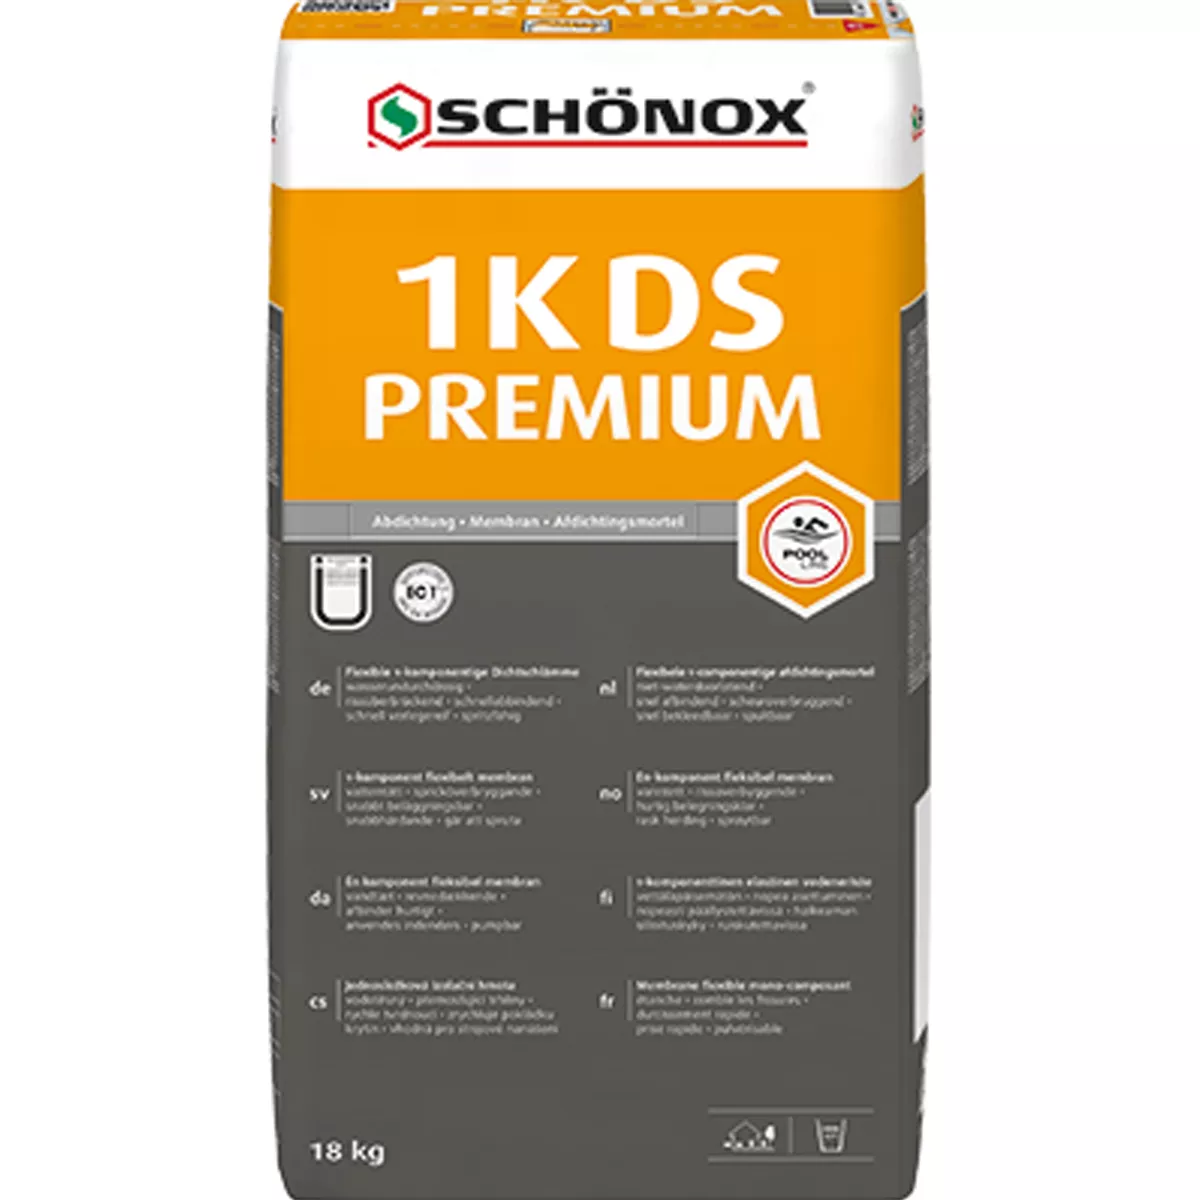 Schönox 1K-DS PREMIUM - sealing slurry / sealing (18Kg)